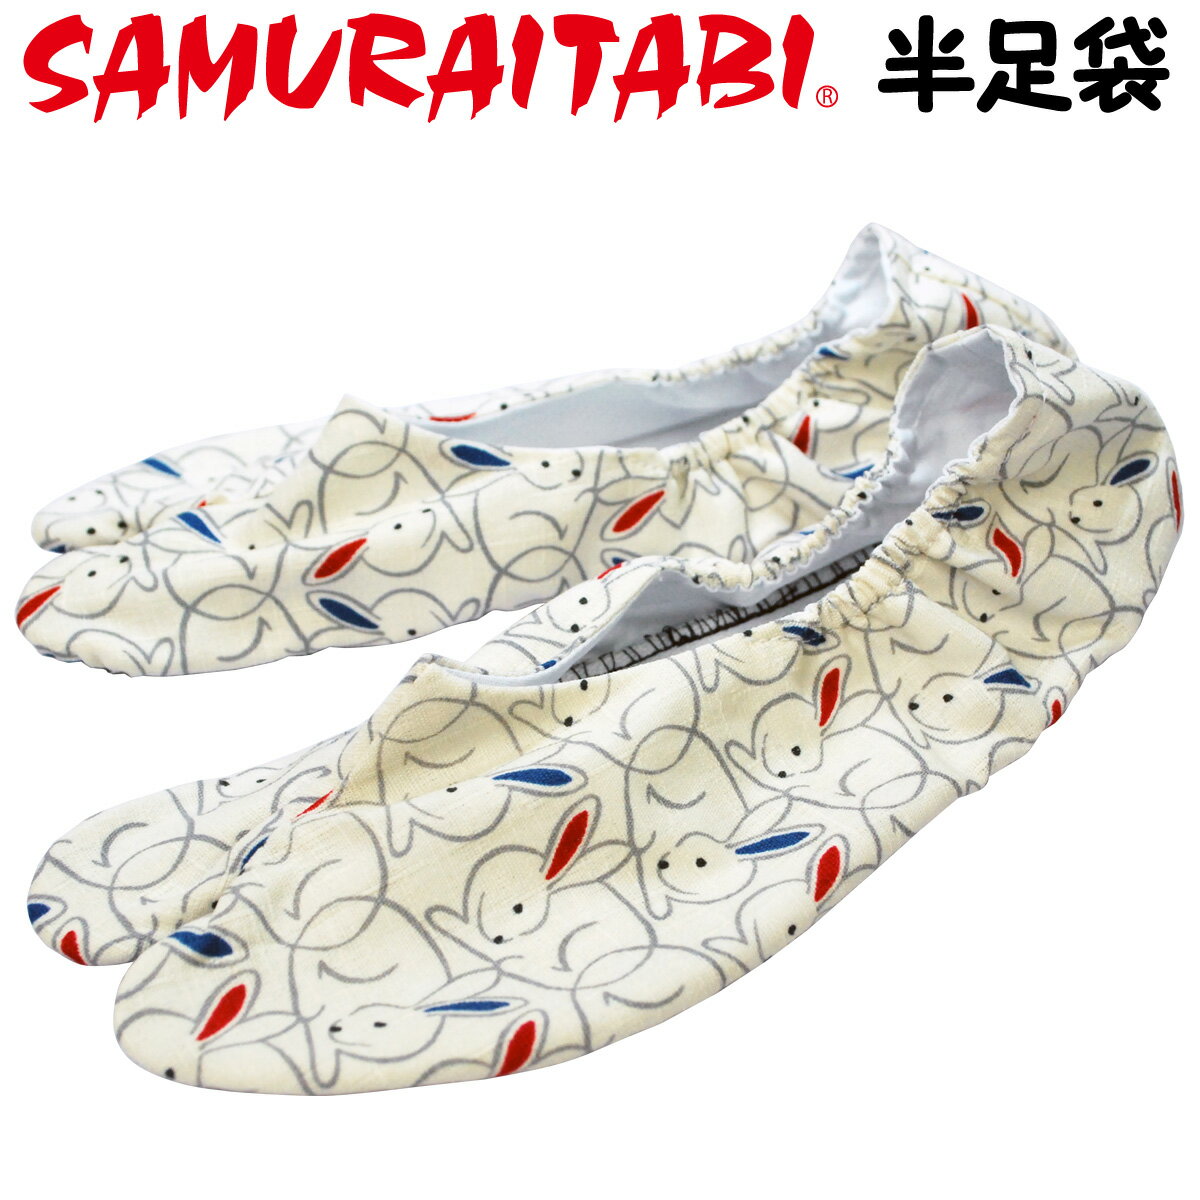 半足袋〜うさぎ柄〜 SAMUTAITABI 2023年の干支うさぎ柄の半足袋です。 ゴムなので靴下感覚で履きやすい半足袋仕様です。 ※在庫がない場合、作製するのに1ヶ月程度かかります。 日本国内の足袋生産量80%をほこる「埼玉県行田市」の足袋職人が、ひとつひとつ心を込めてお作りしていますので、到着までお時間を頂戴しております。 samuraitabi 侍 サムライ 足袋 柄足袋 半足袋